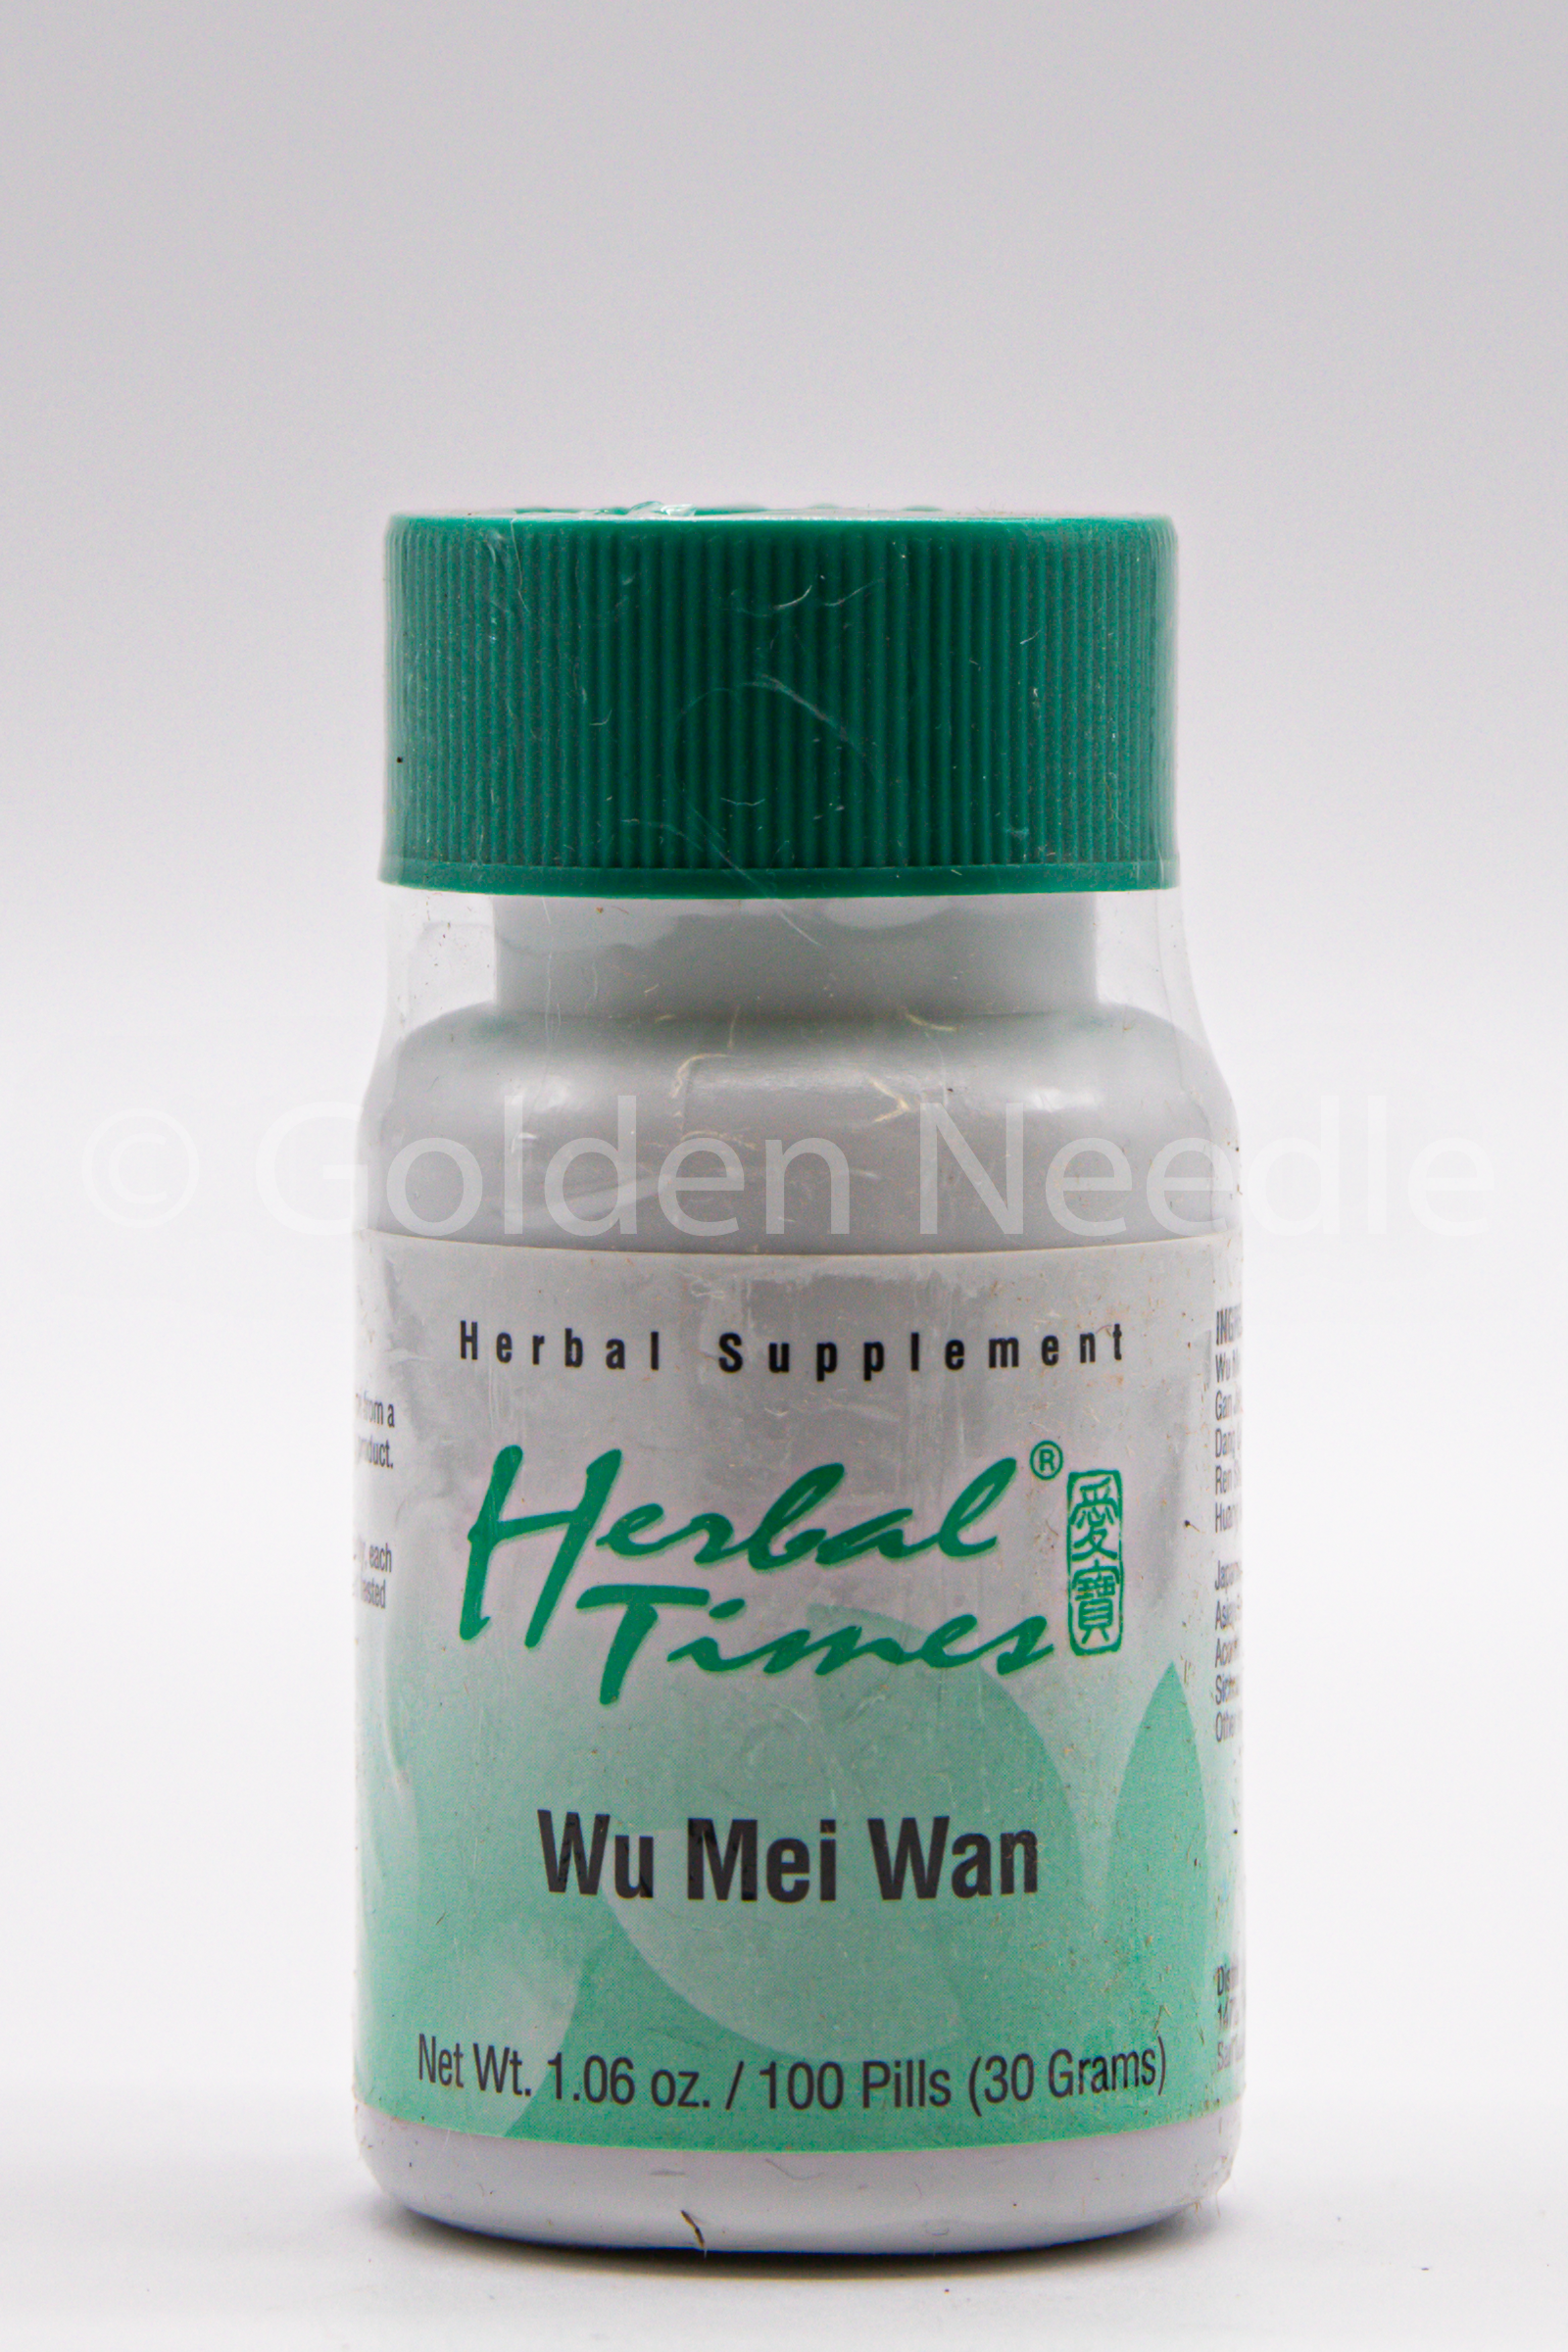 Wu Mei Wan